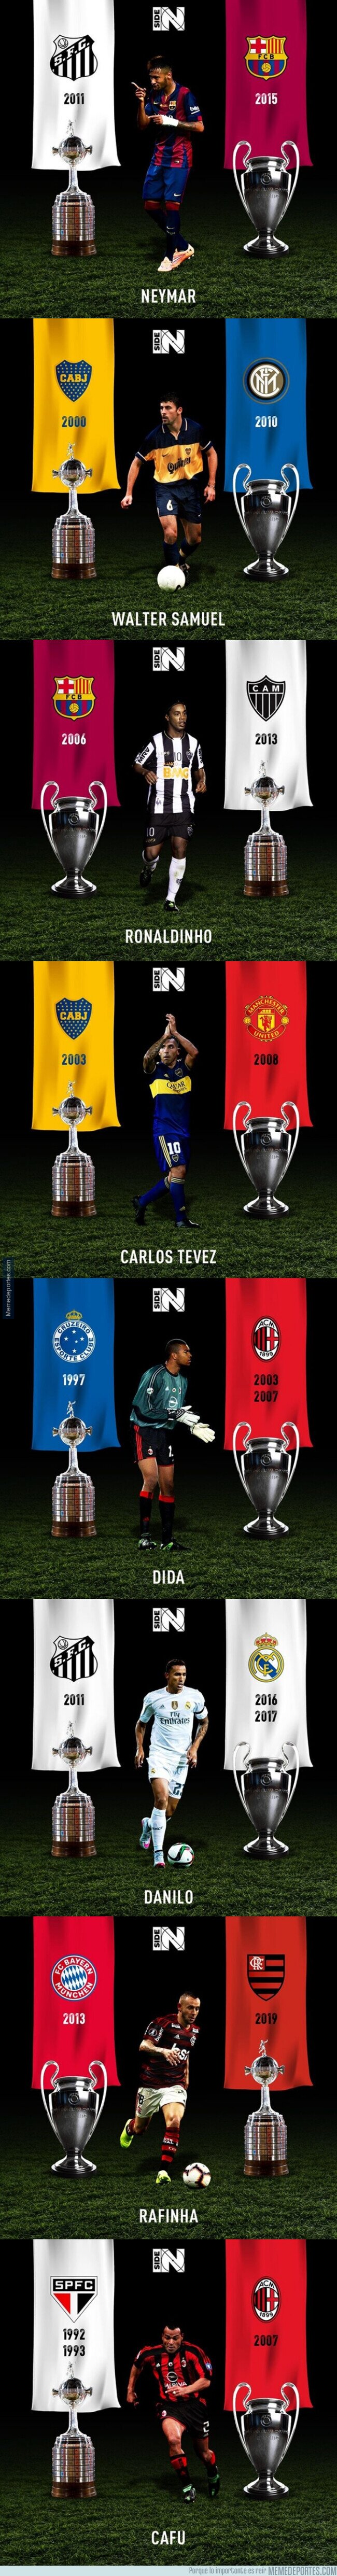 1103122 - Jugadores que han ganado la Champions y la Copa Libertadores, por @inside_global